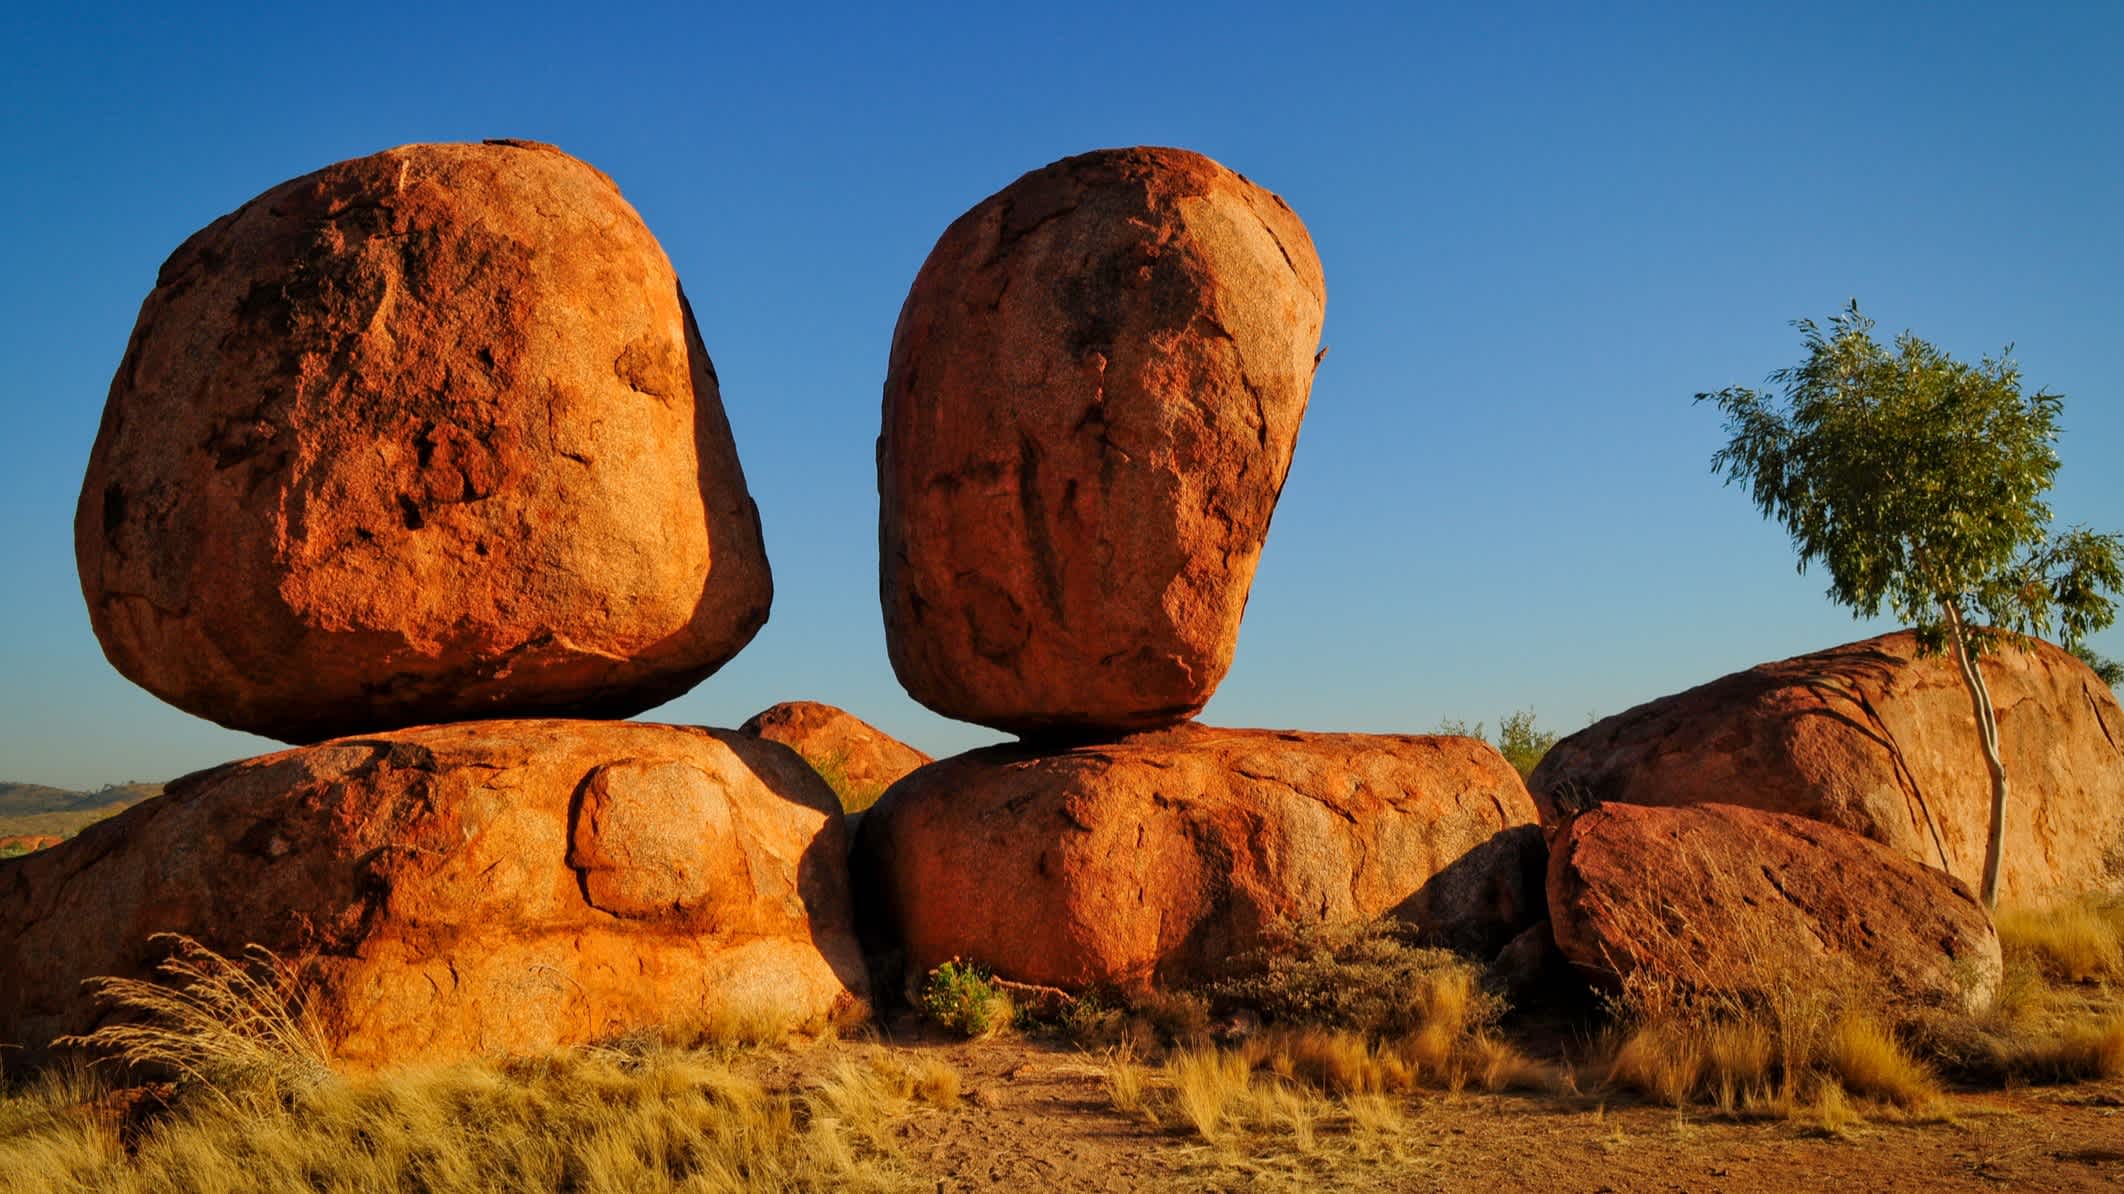 Stehende Steine namens "Devils Marbles" im australischen Outback.